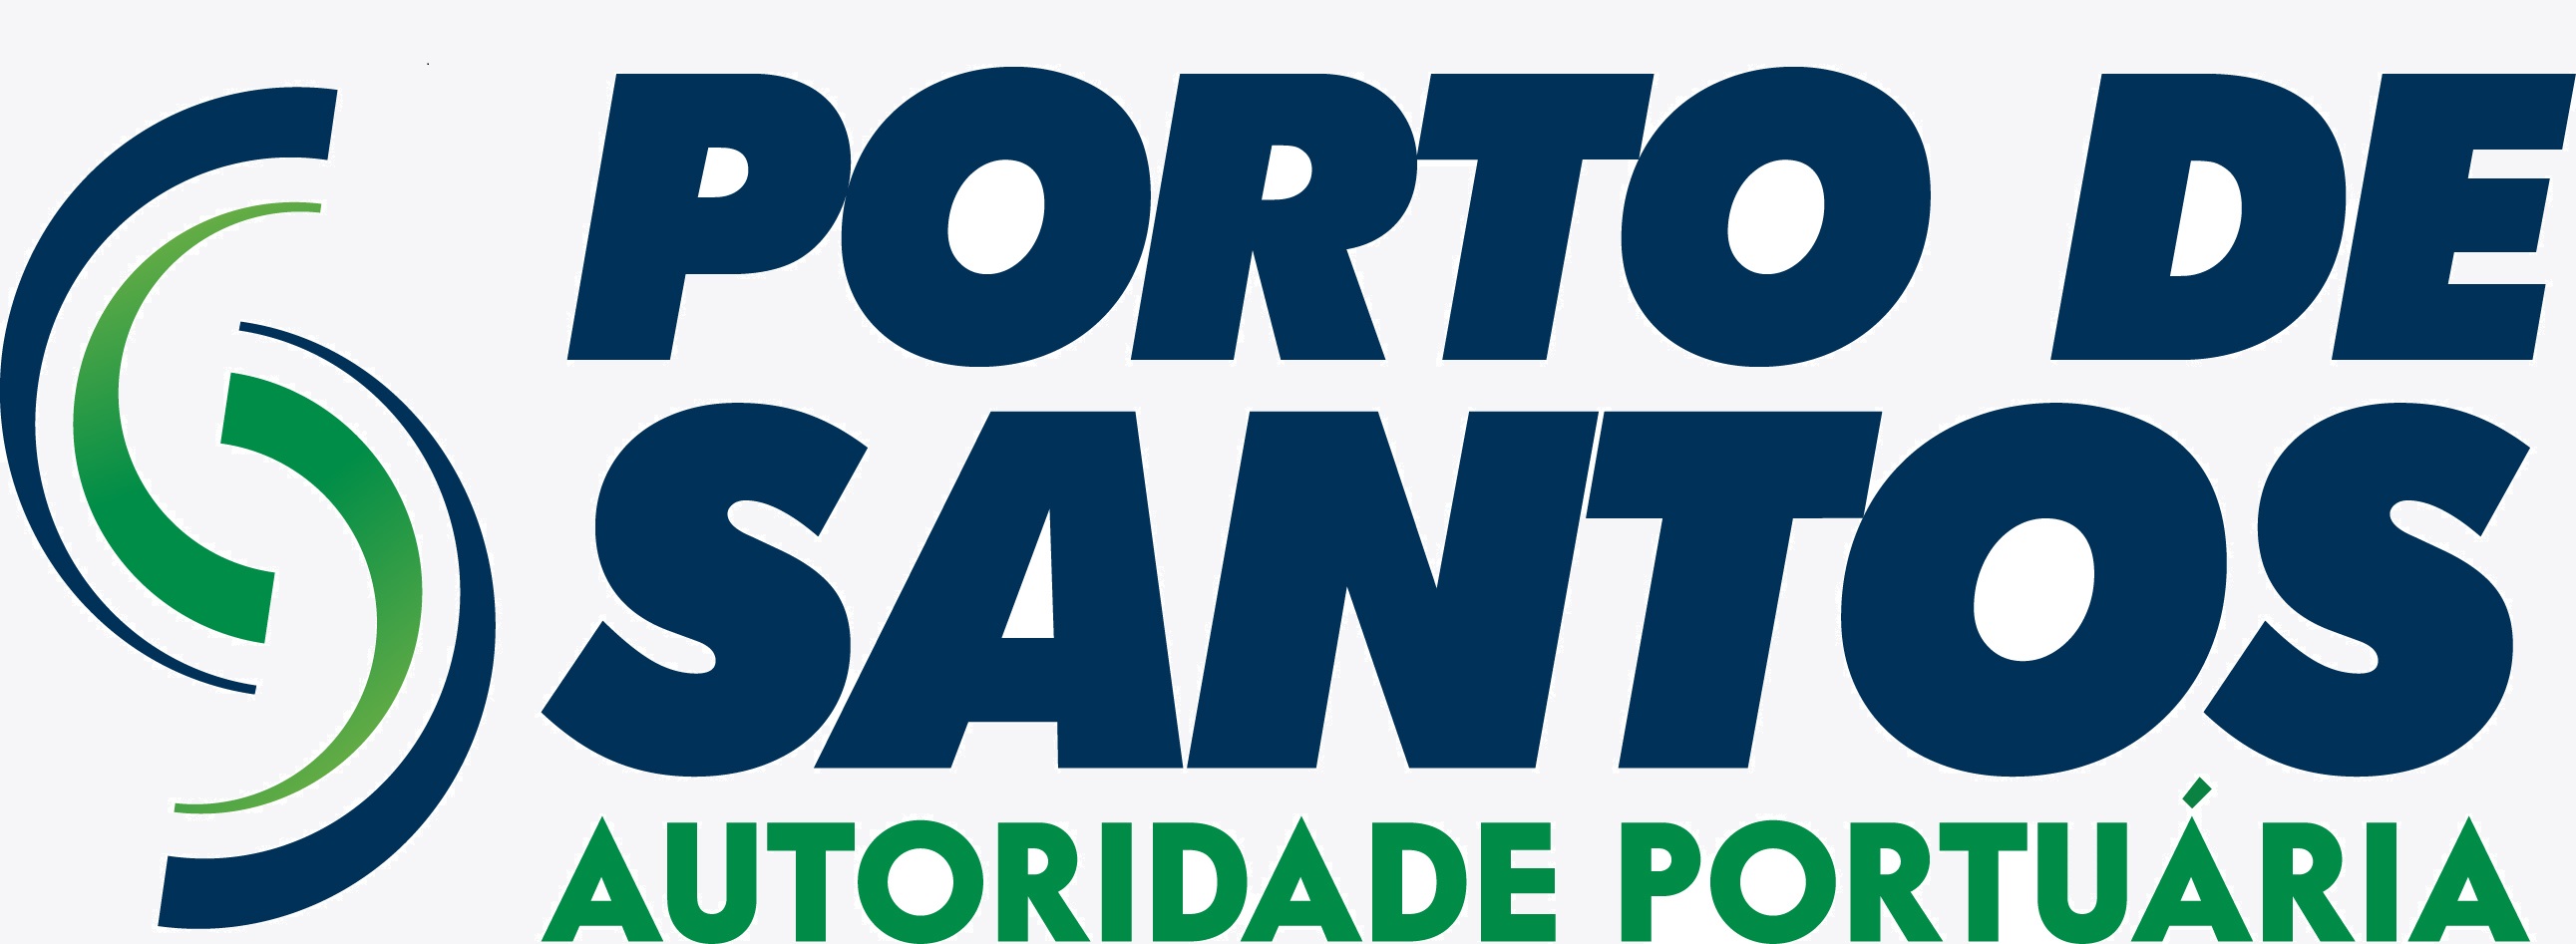 APS - Autoridade Portuária de Santos